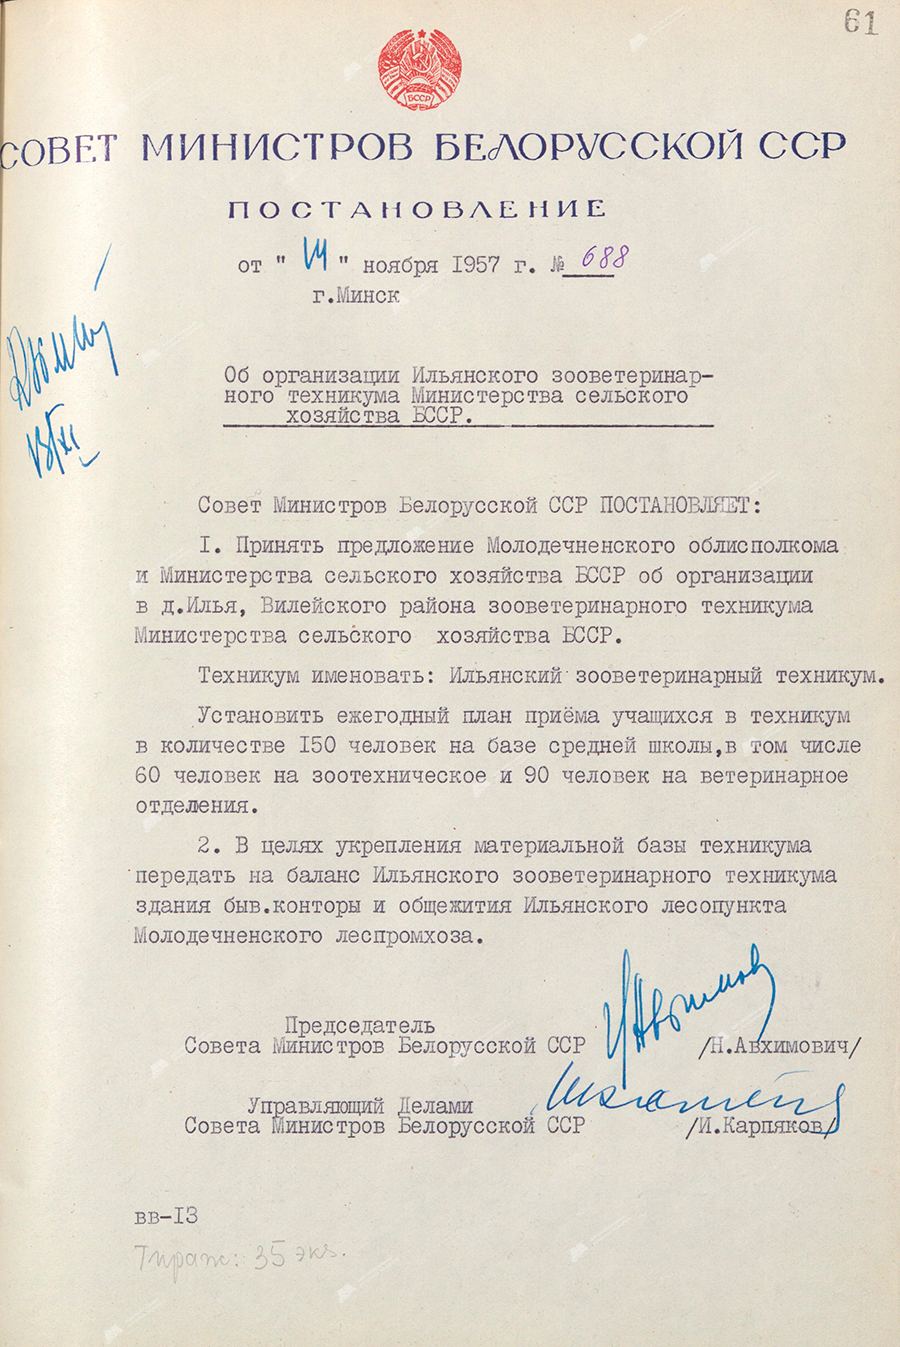 Beschluss Nr. 688 des Ministerrats der BSSR «Über die Organisation der Ilyansky Zooveterinary College des Landwirtschaftsministeriums der BSSR»-с. 0